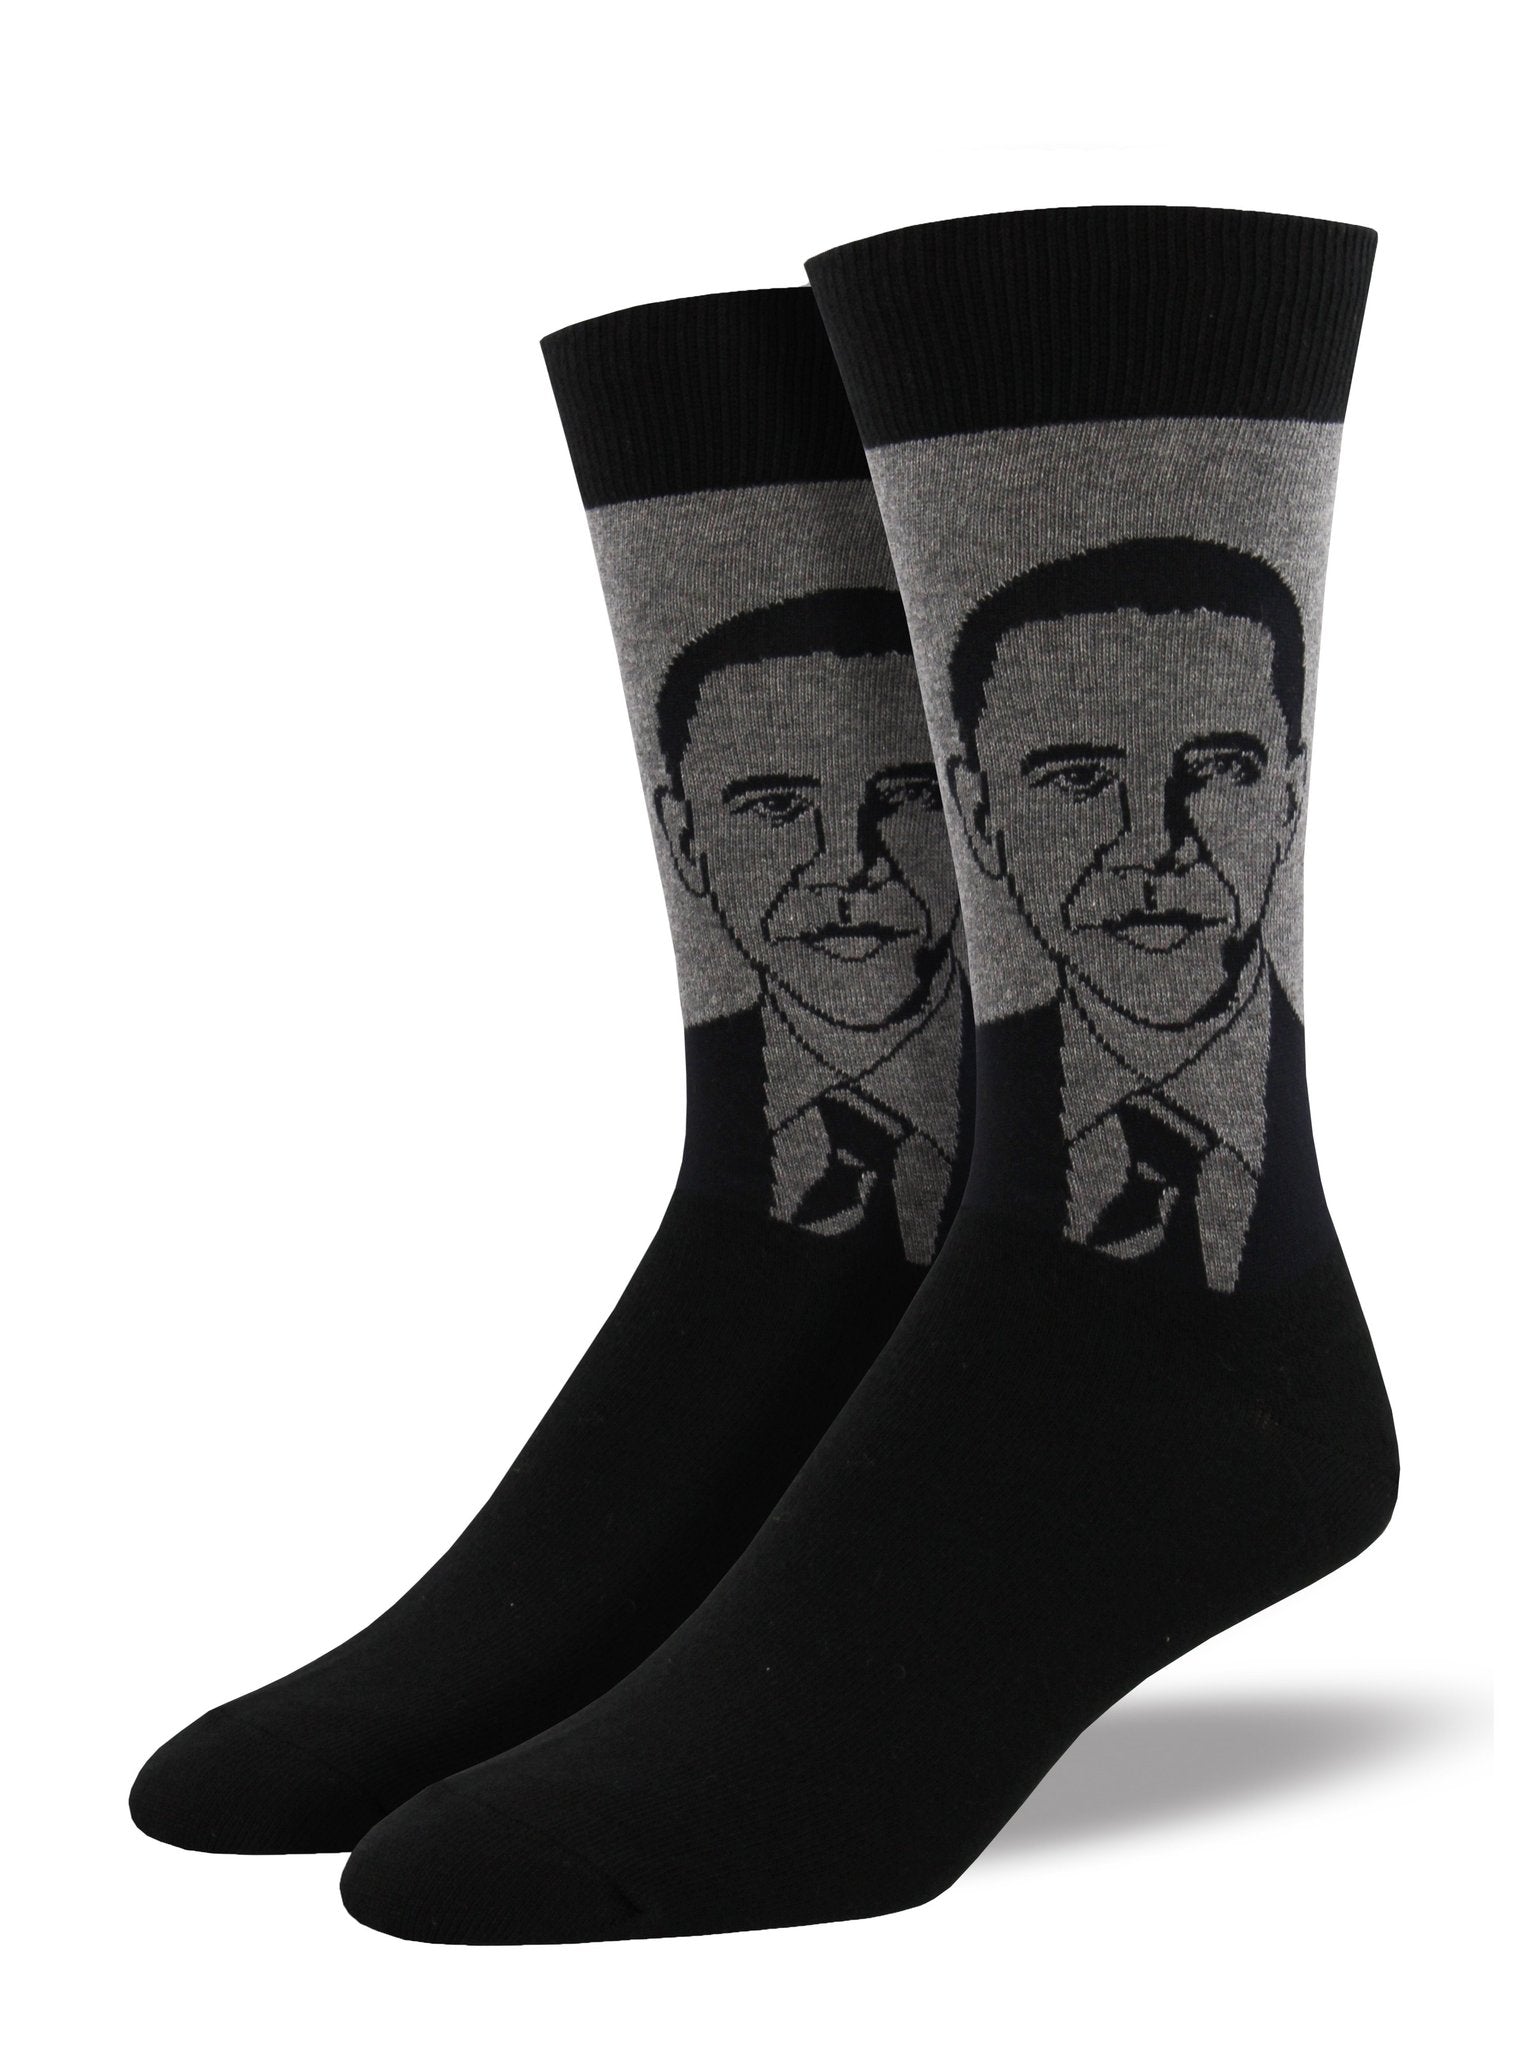 Obama Men's Socks